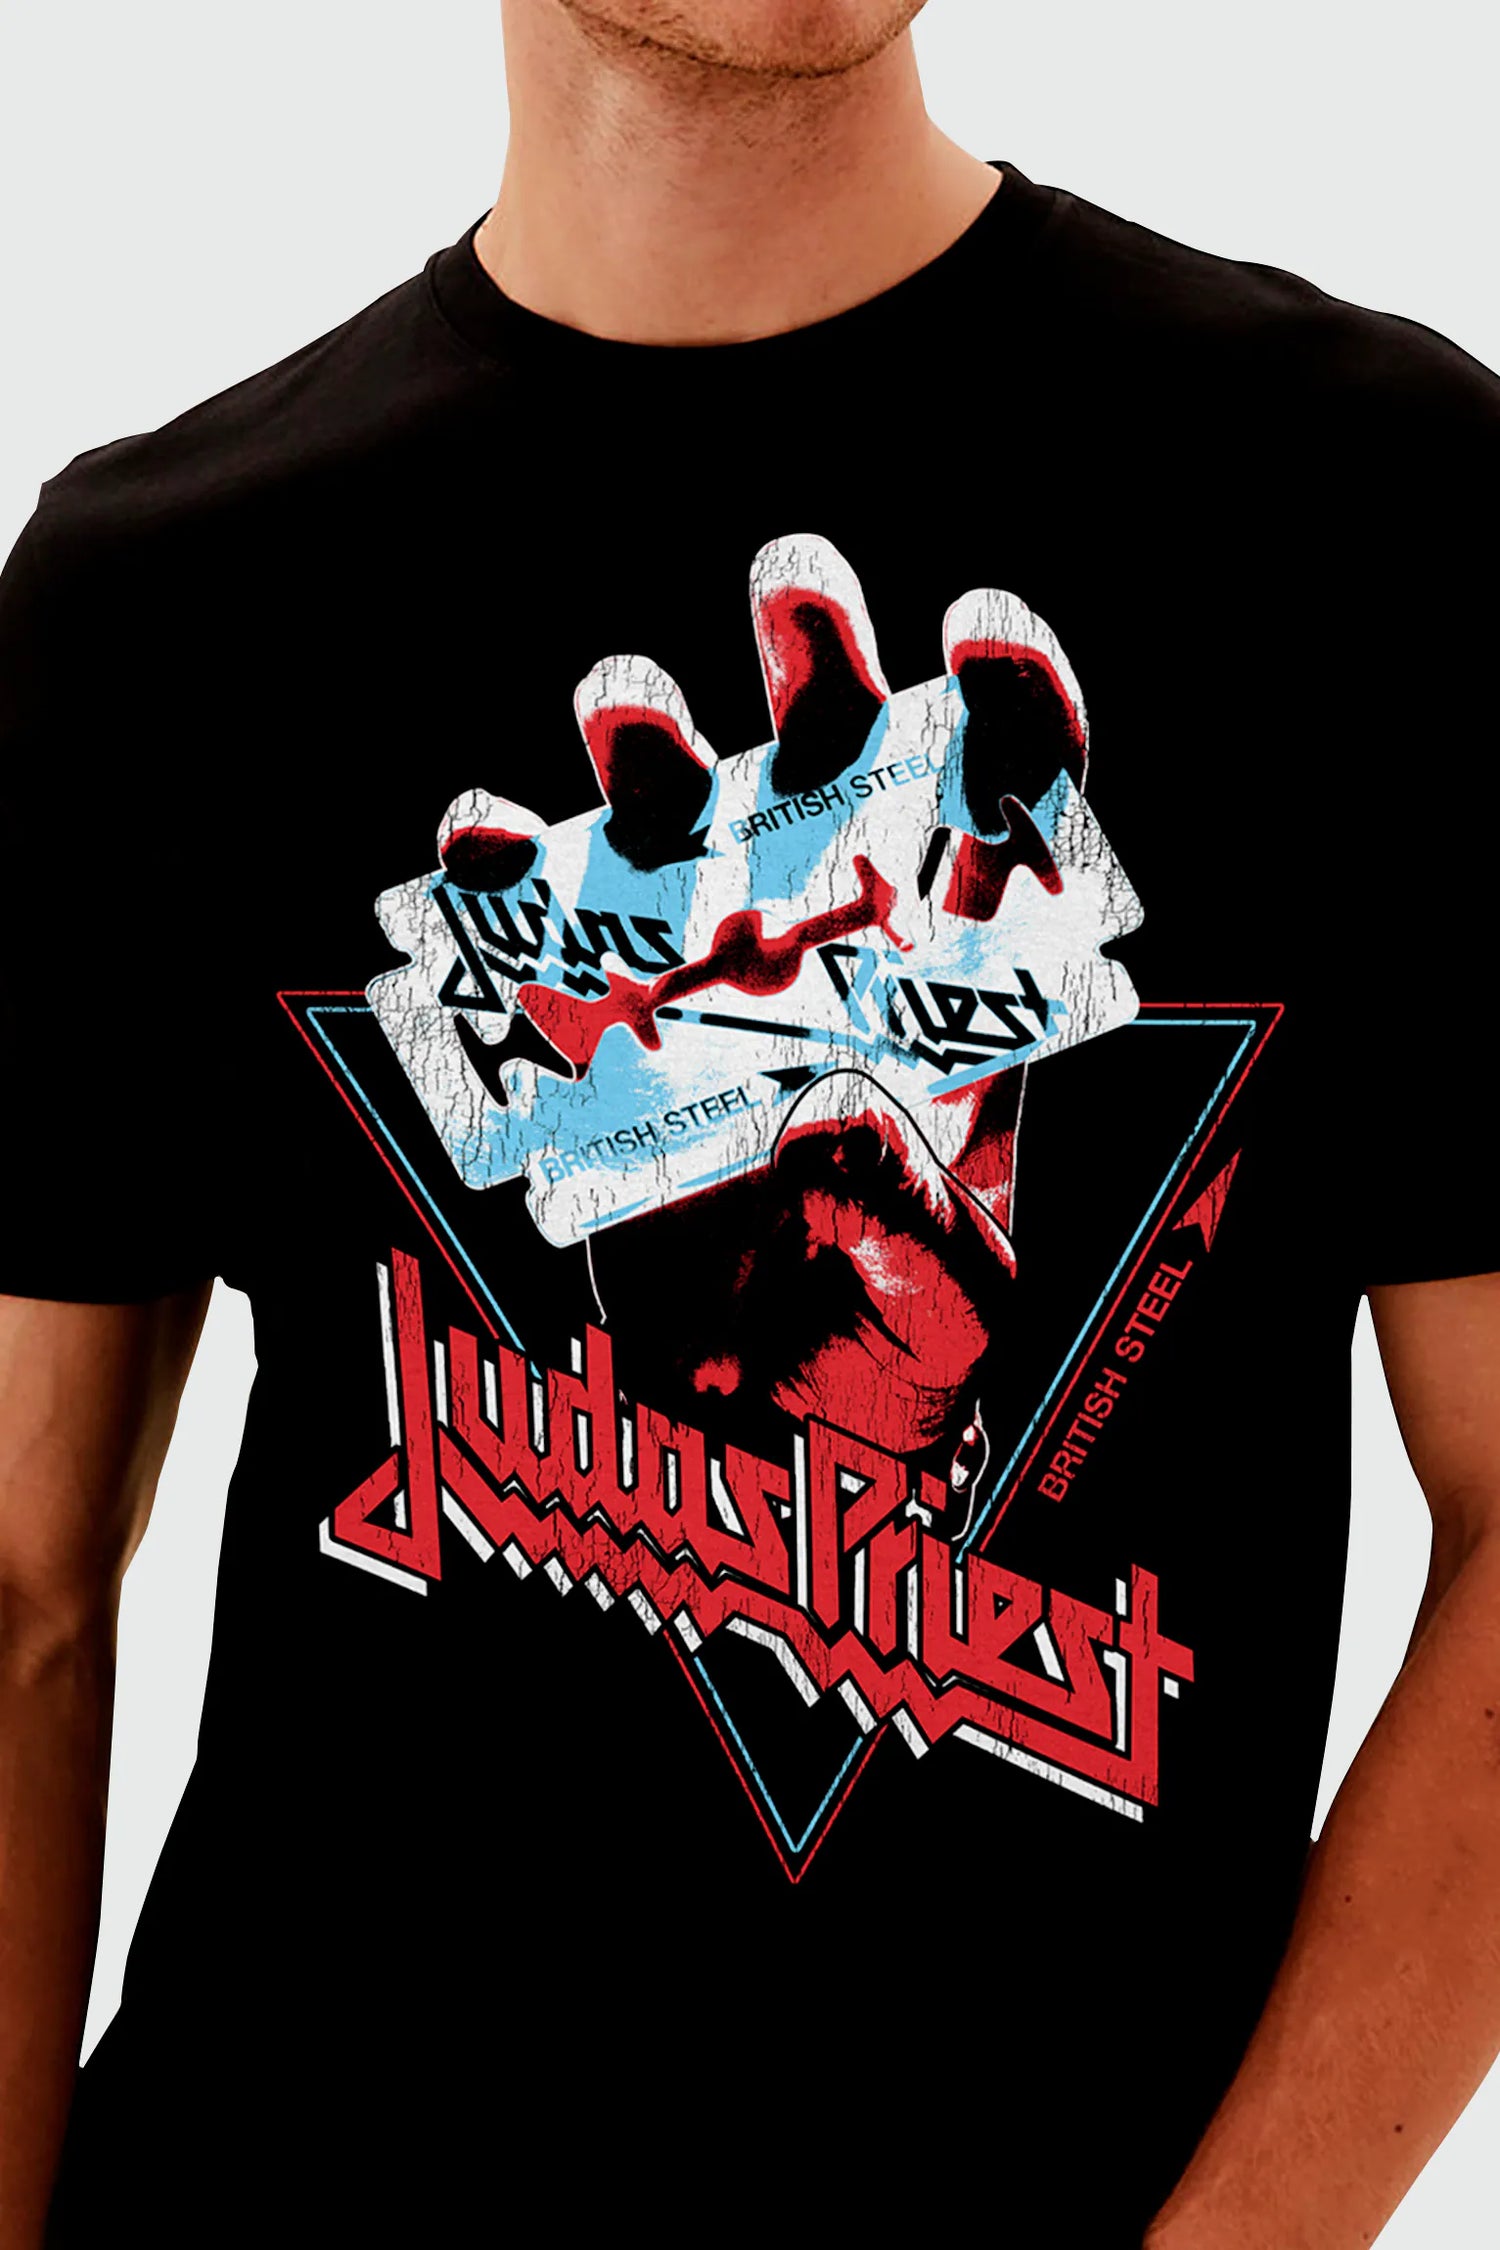 Camiseta Judas Priest British Steel 1